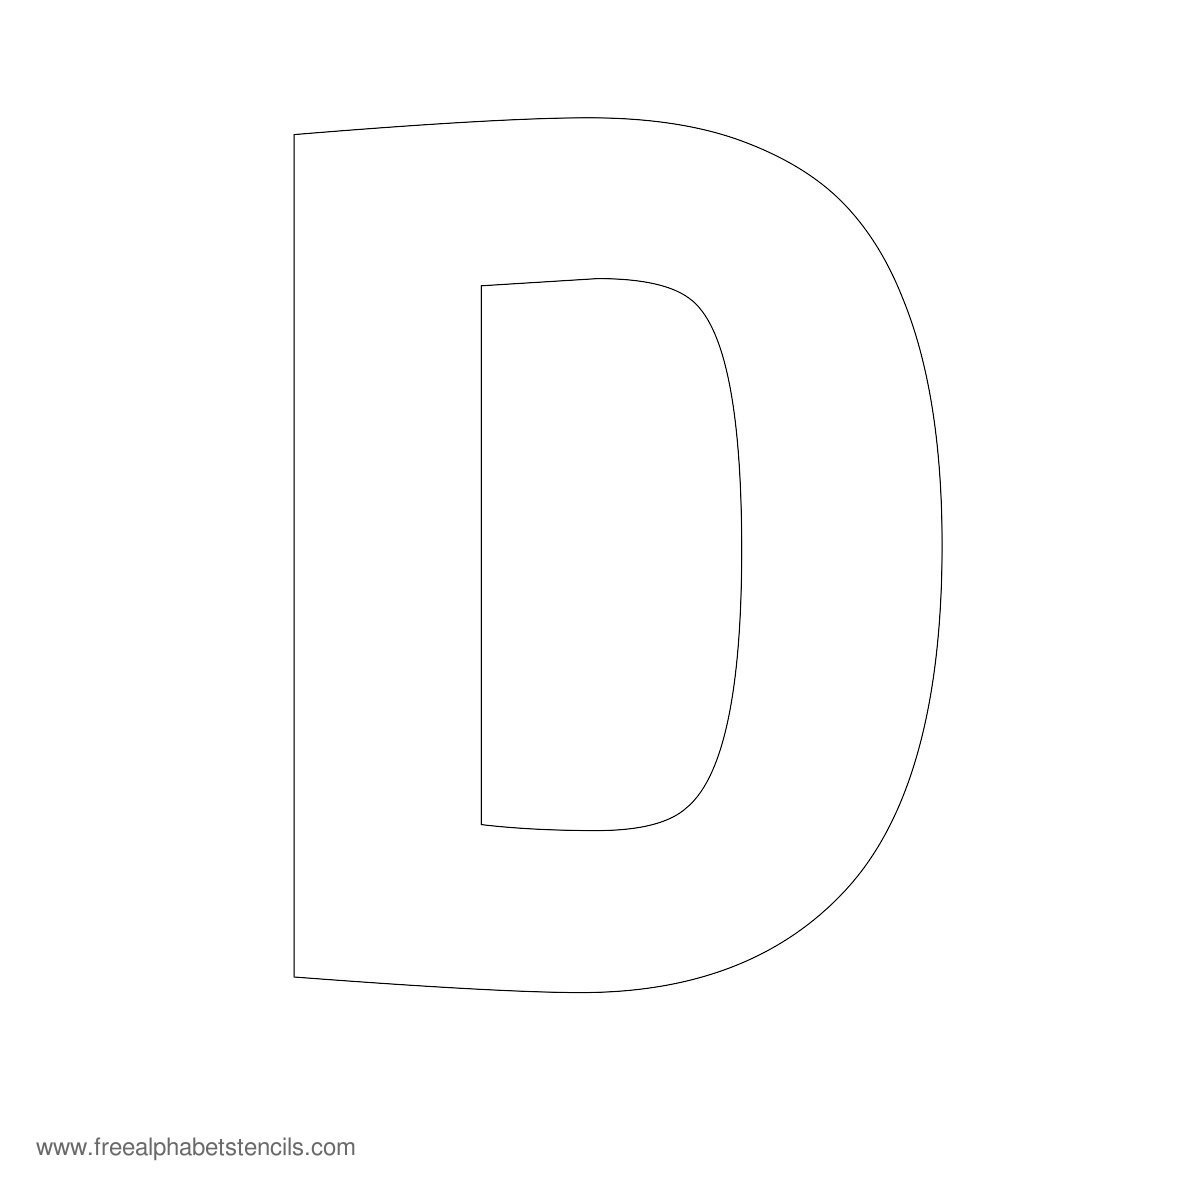 Large Alphabet Stencils | Freealphabetstencils - Free Printable Alphabet Stencil Patterns